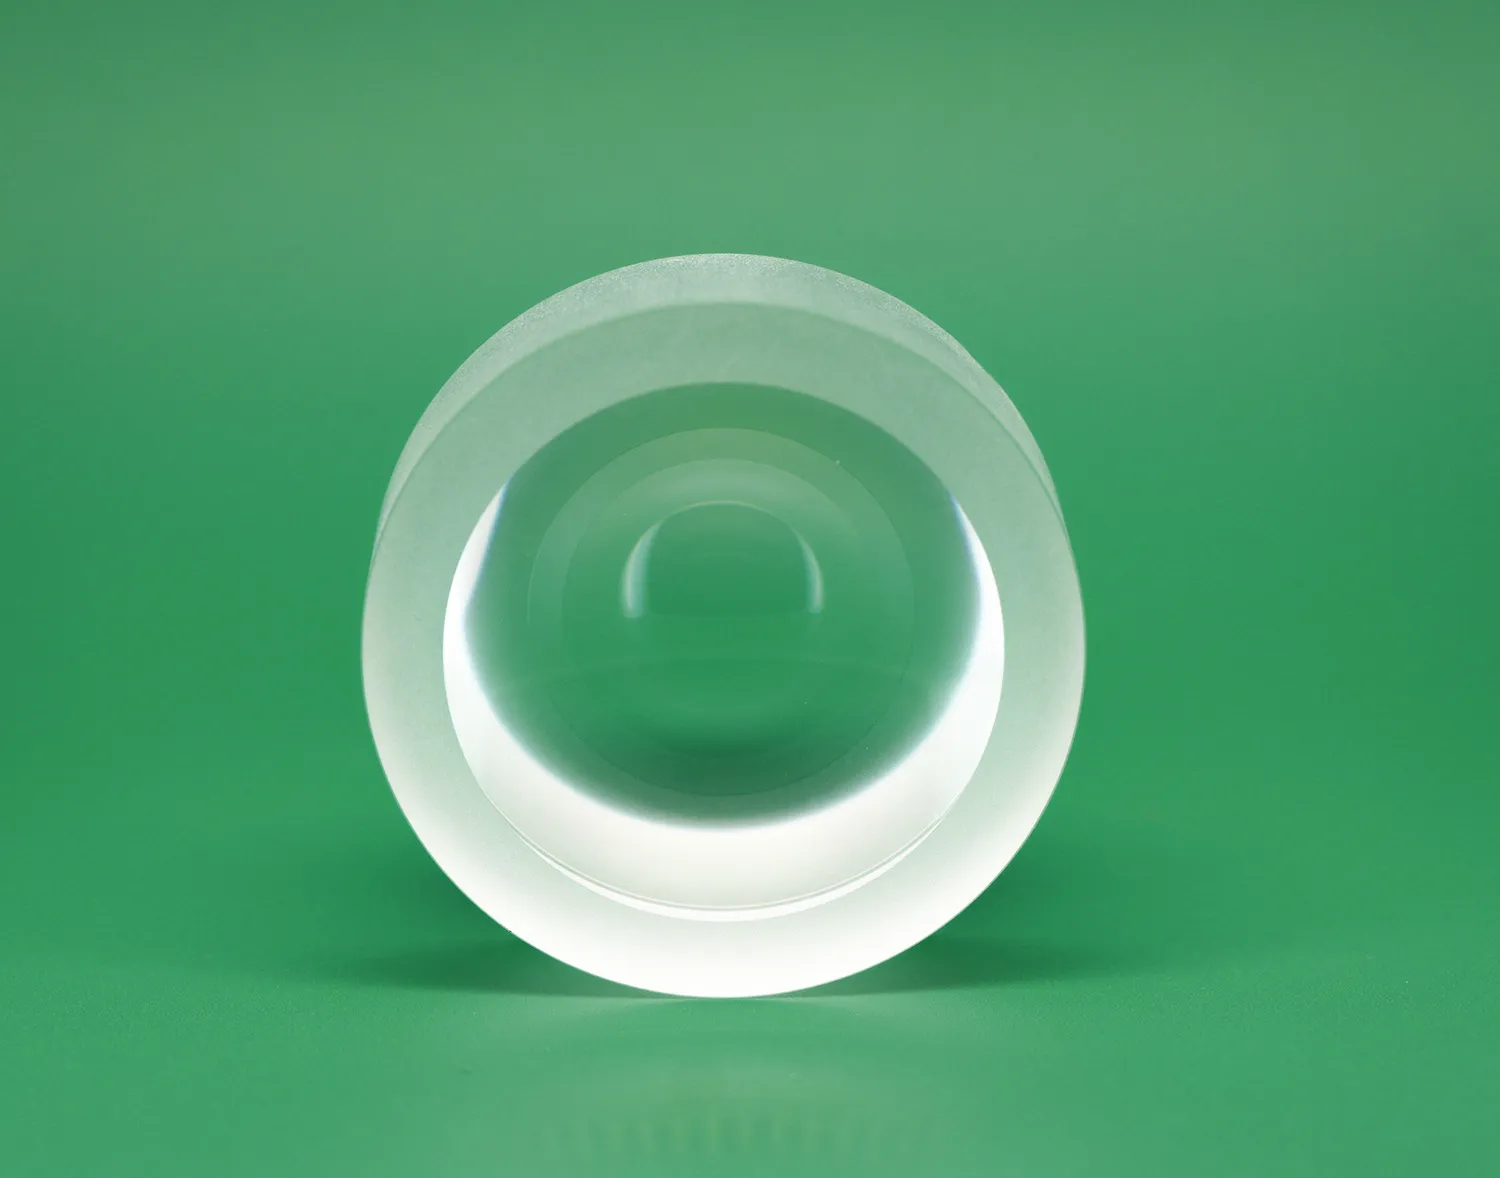 Optical Components Double Concave Lenses